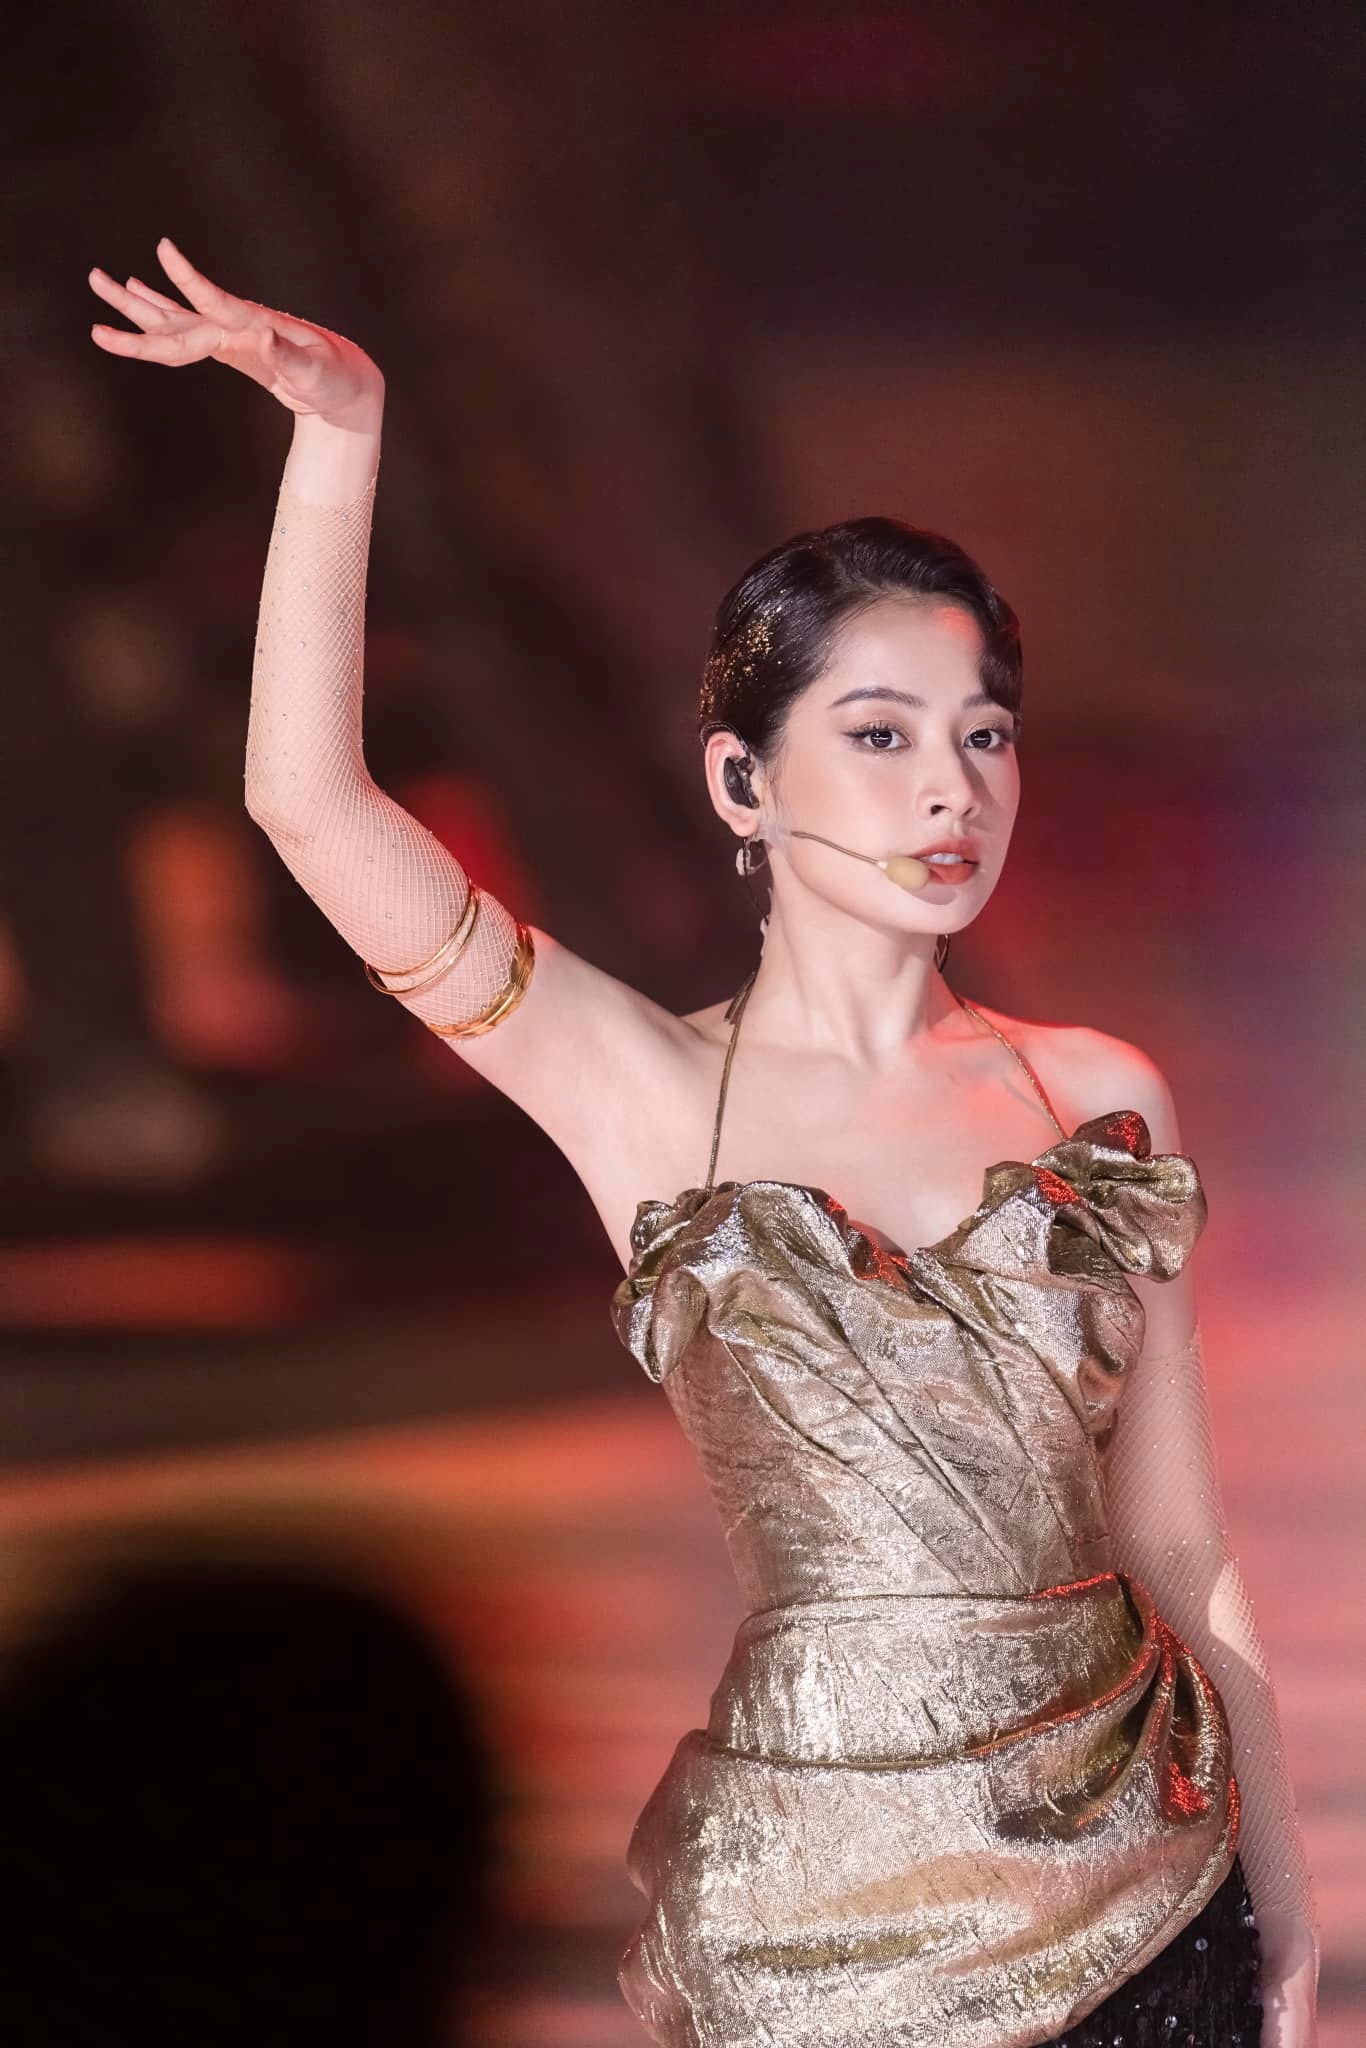 Nữ ca sĩ Việt Nam được fan khen ngợi nhan sắc và được bình chọn là người ăn mặc đẹp bậc nhất tại chương trình năm nay. Ảnh: FBNV